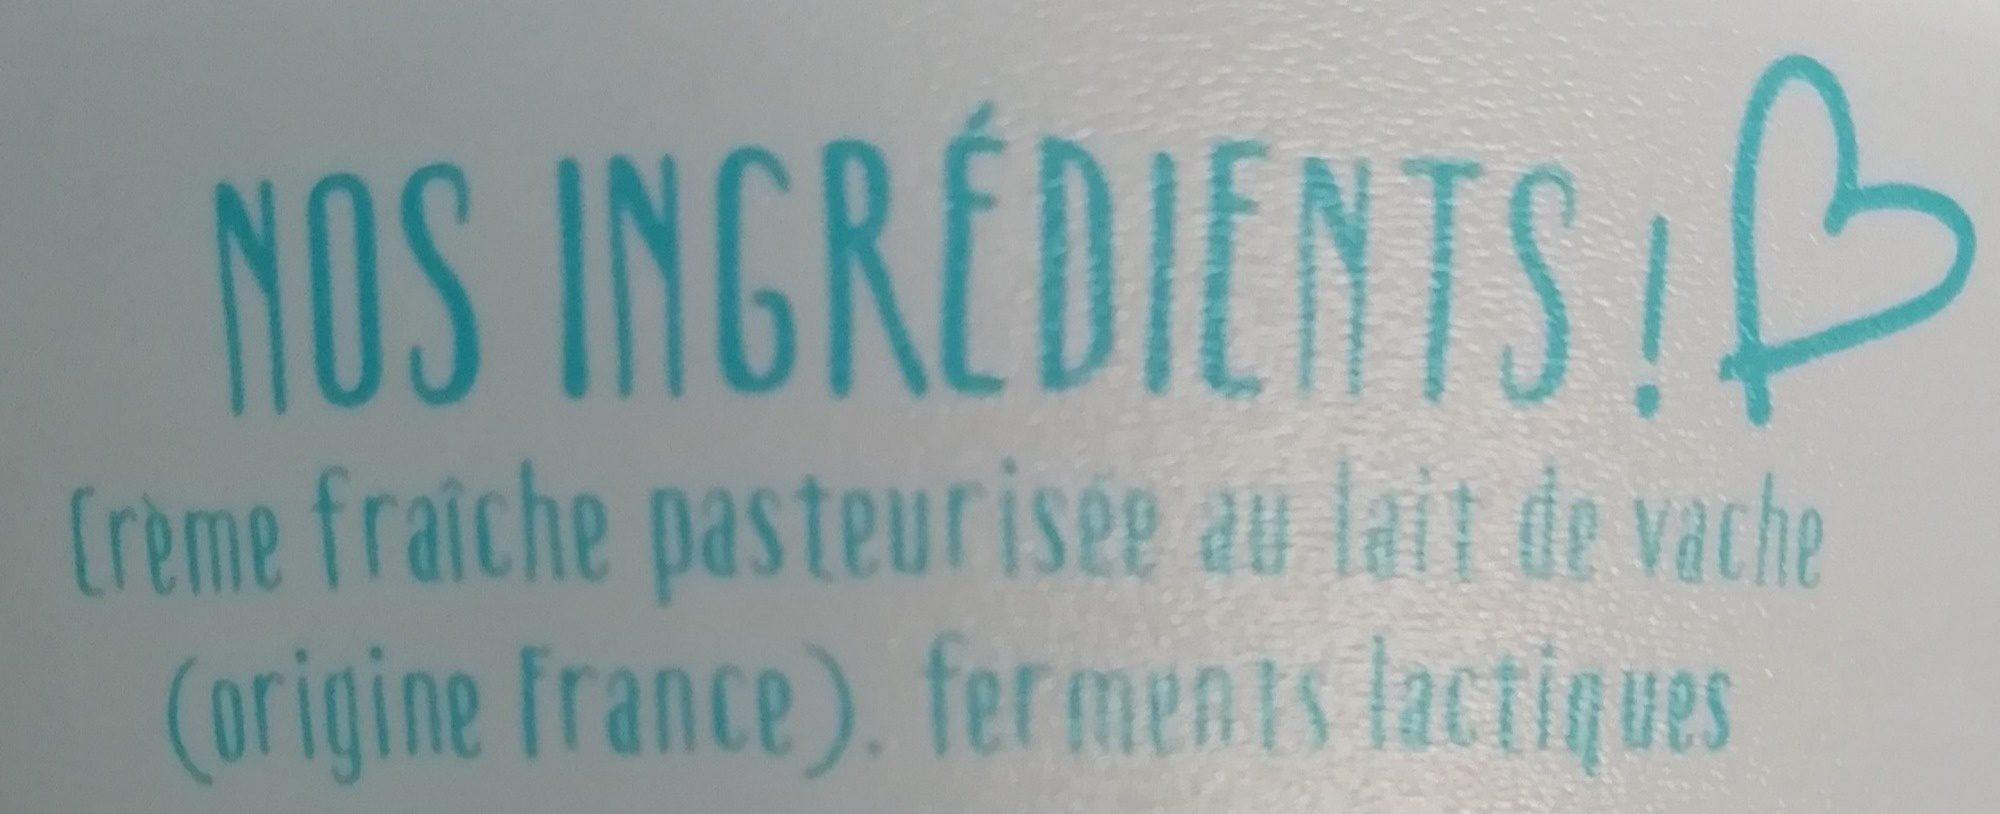 Crème fraîche épaisse au lait de vache YOgourmand - Ingredients - fr